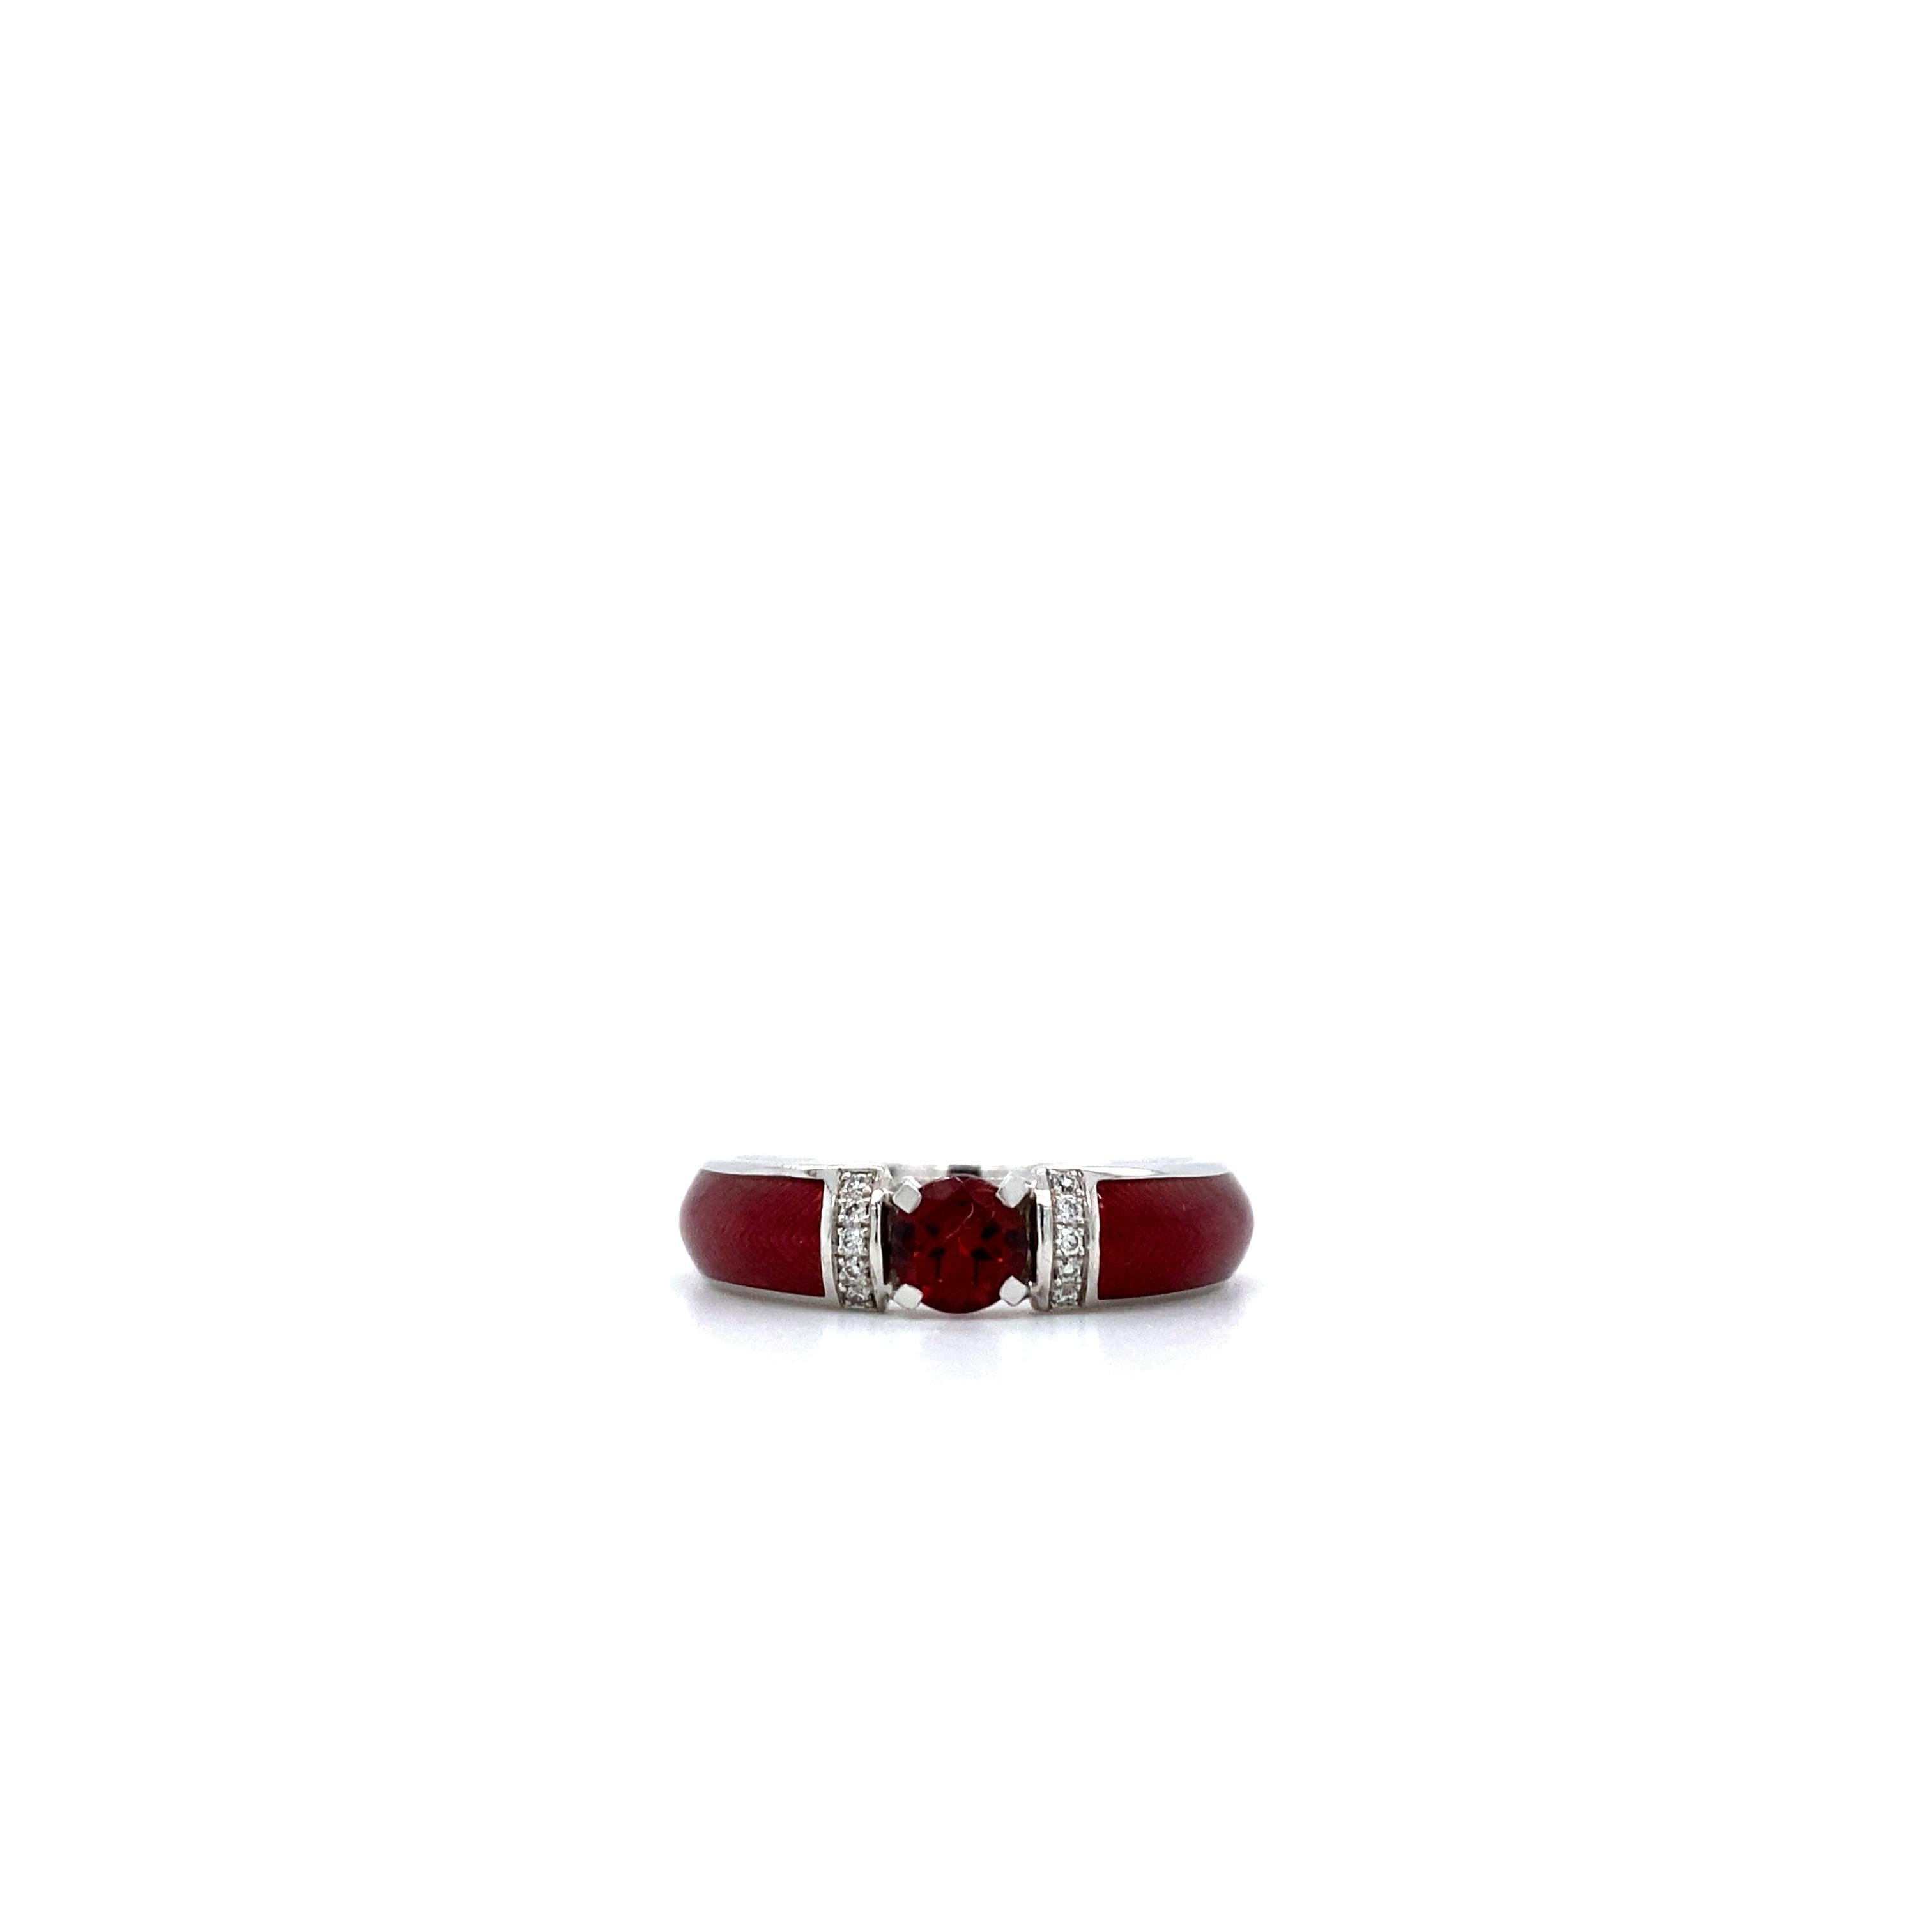 Im Angebot: Roter Vitreous Emaille Ring 18k Weißgold 0,5 Karat Solitär 10 Diamanten 0,05 Karat G VS () 2